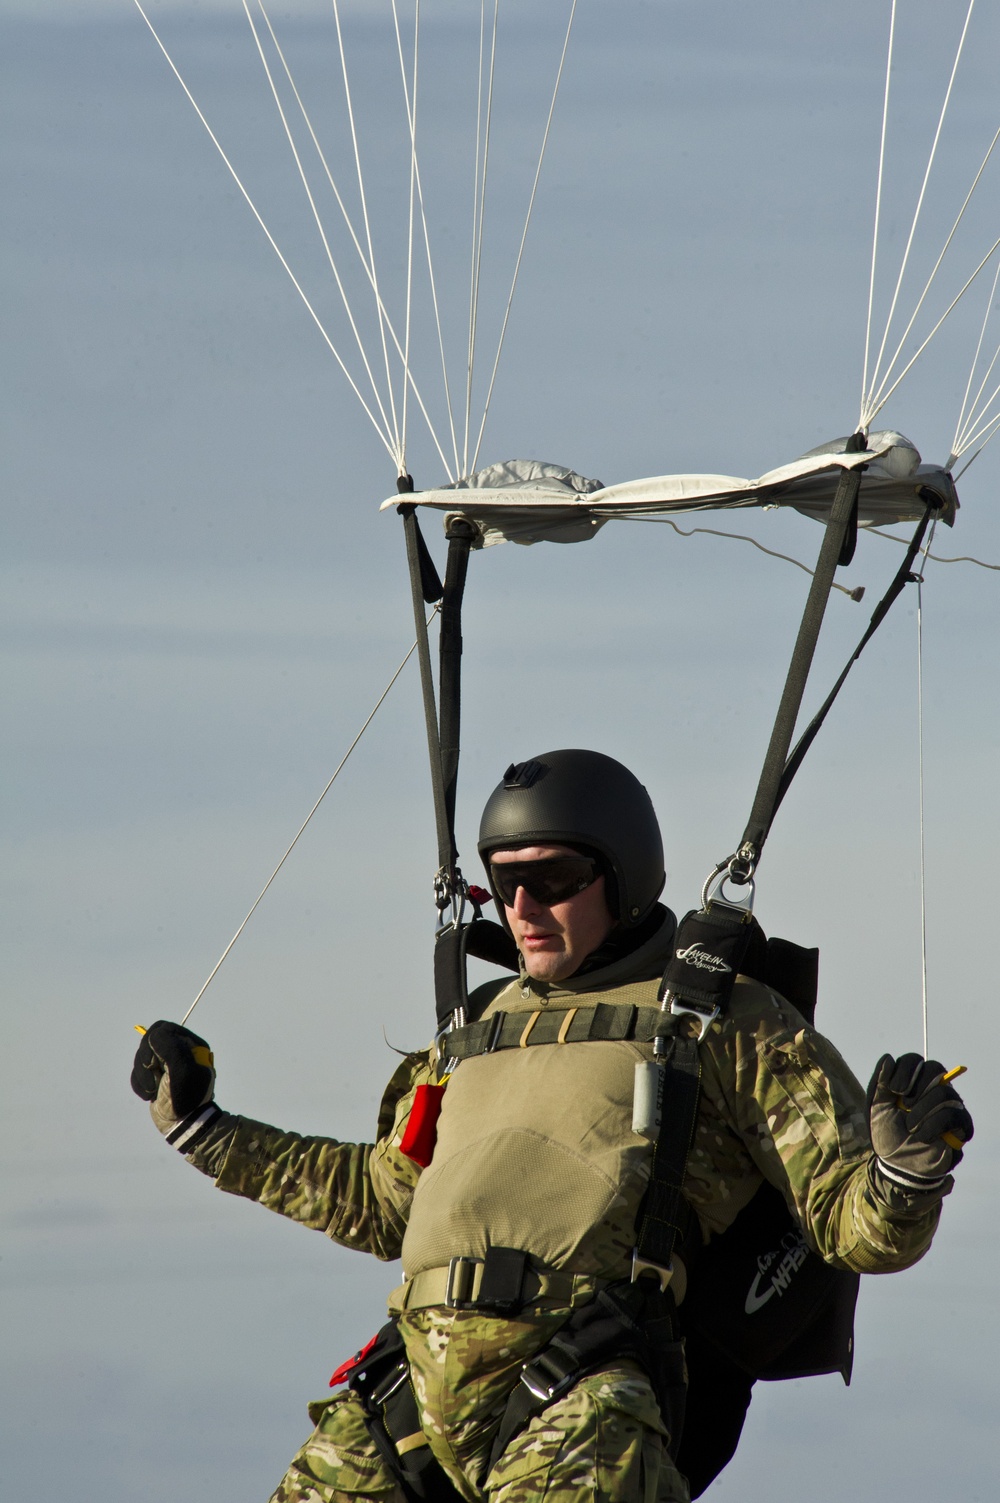 SERE jump training at Fairchild Air Force Base